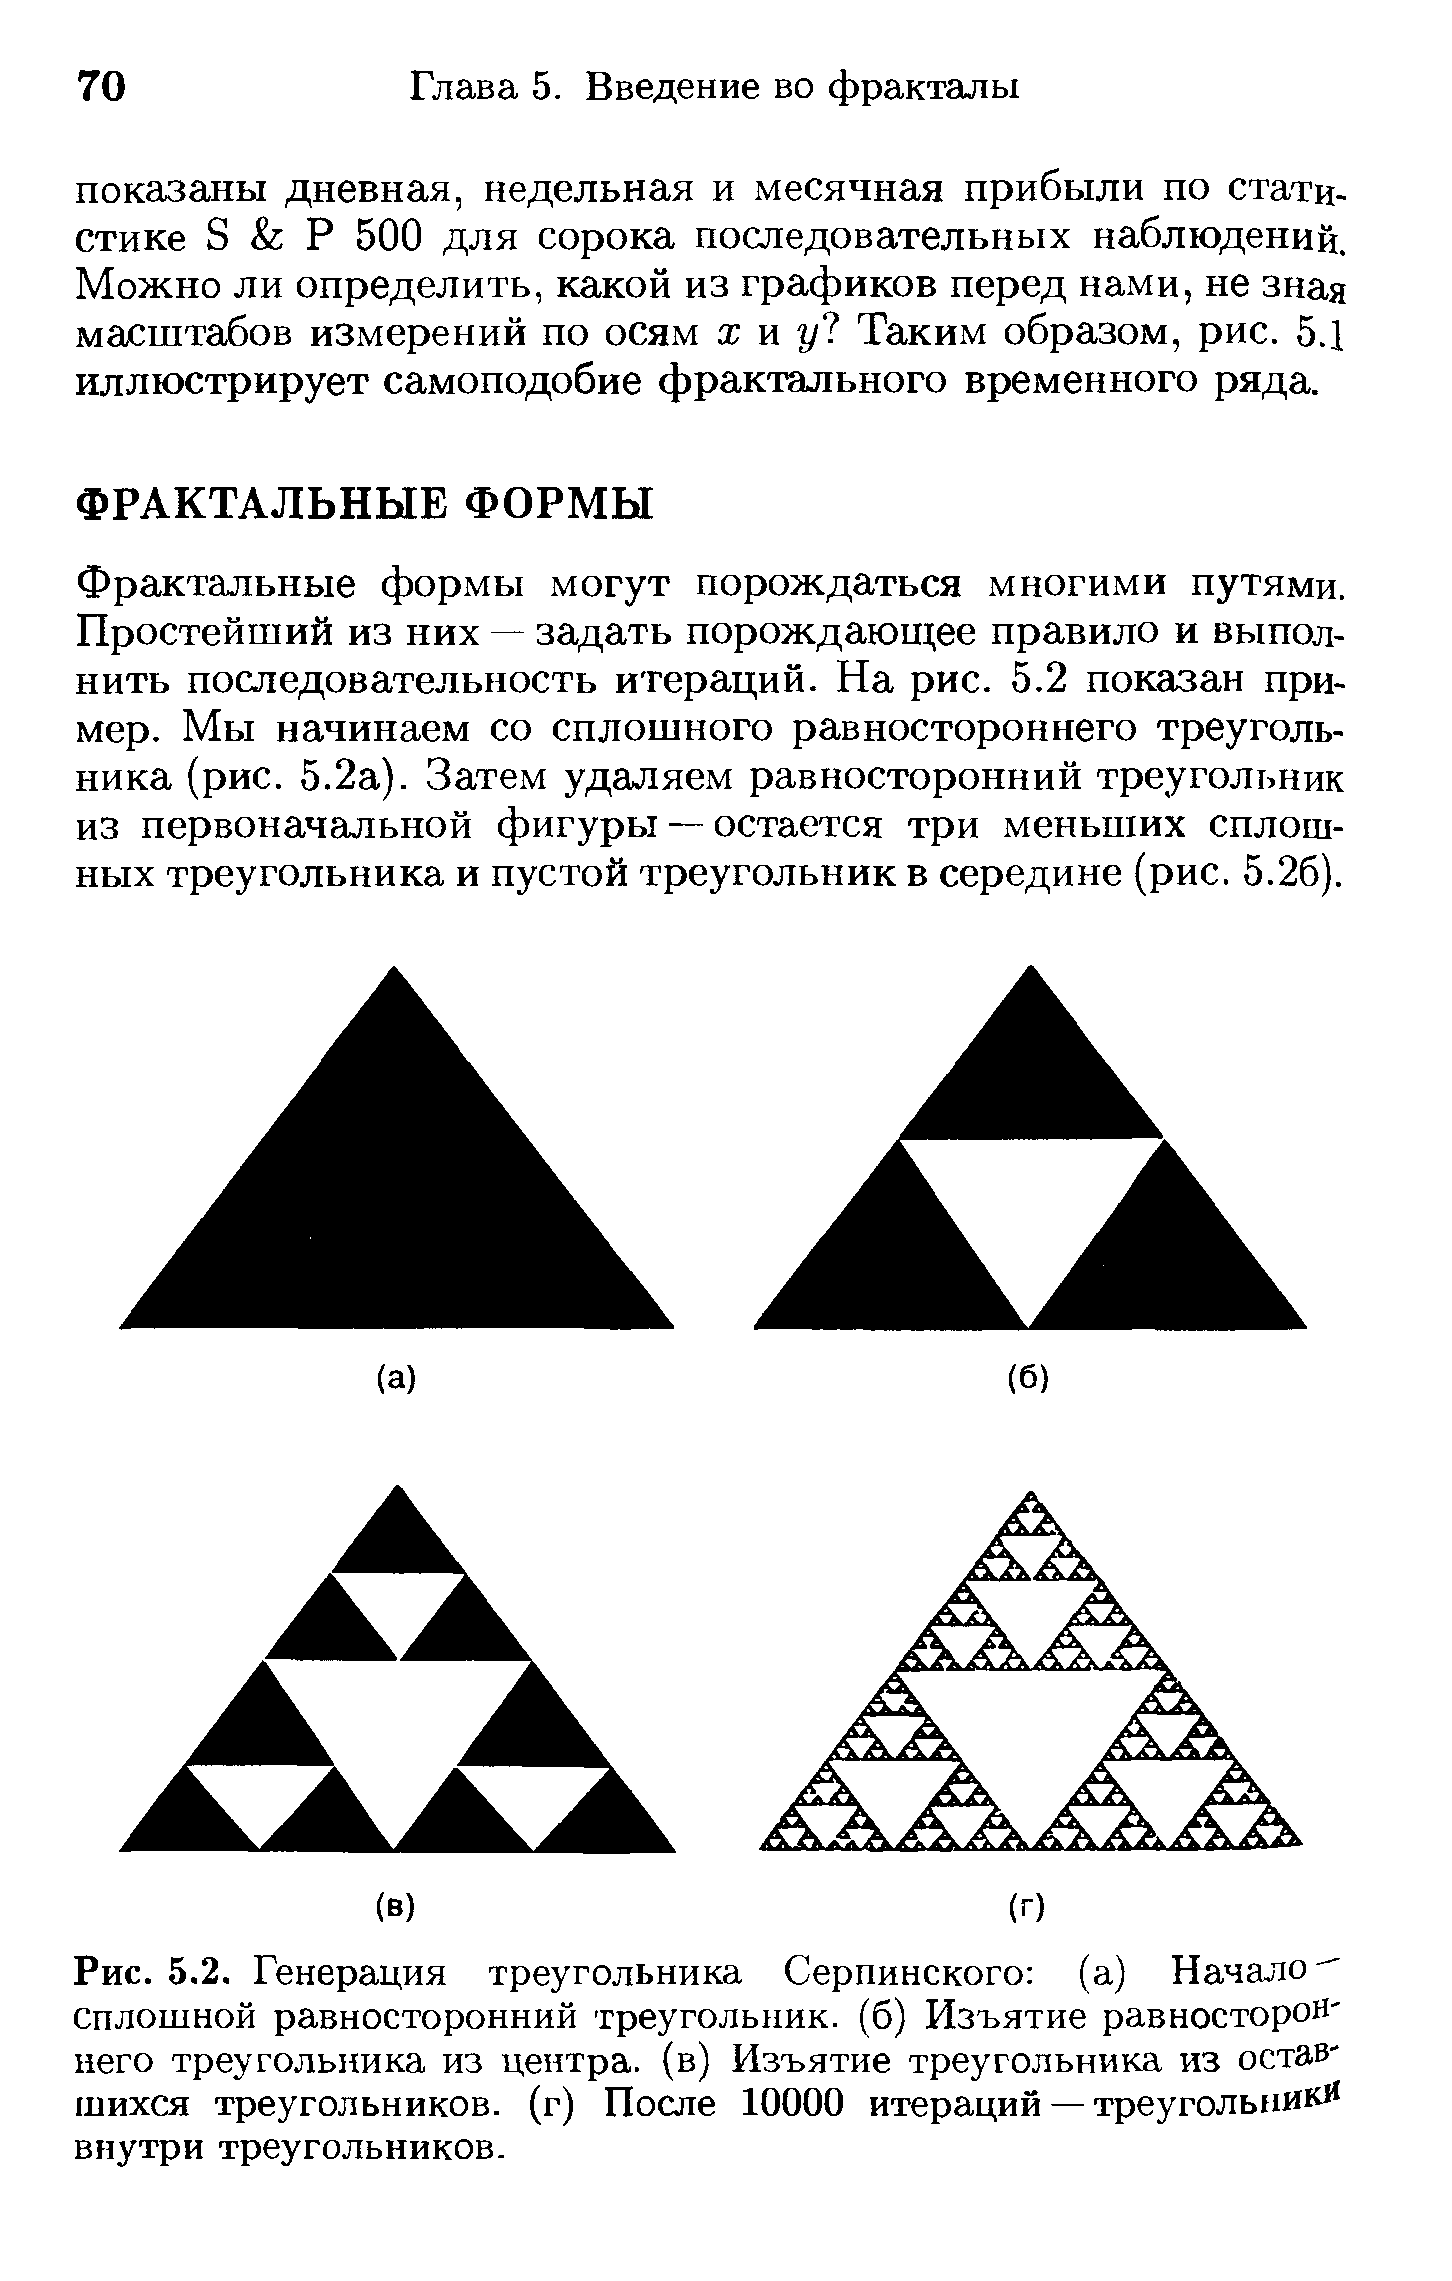 Рис. 5.2. Генерация треугольника Серпинского (а) Начало- сплошной равносторонний треугольник, (б) Изъятие равностороннего треугольника из центра, (в) Изъятие треугольника из оставшихся треугольников, (г) После 10000 итераций — треугольники внутри треугольников.
